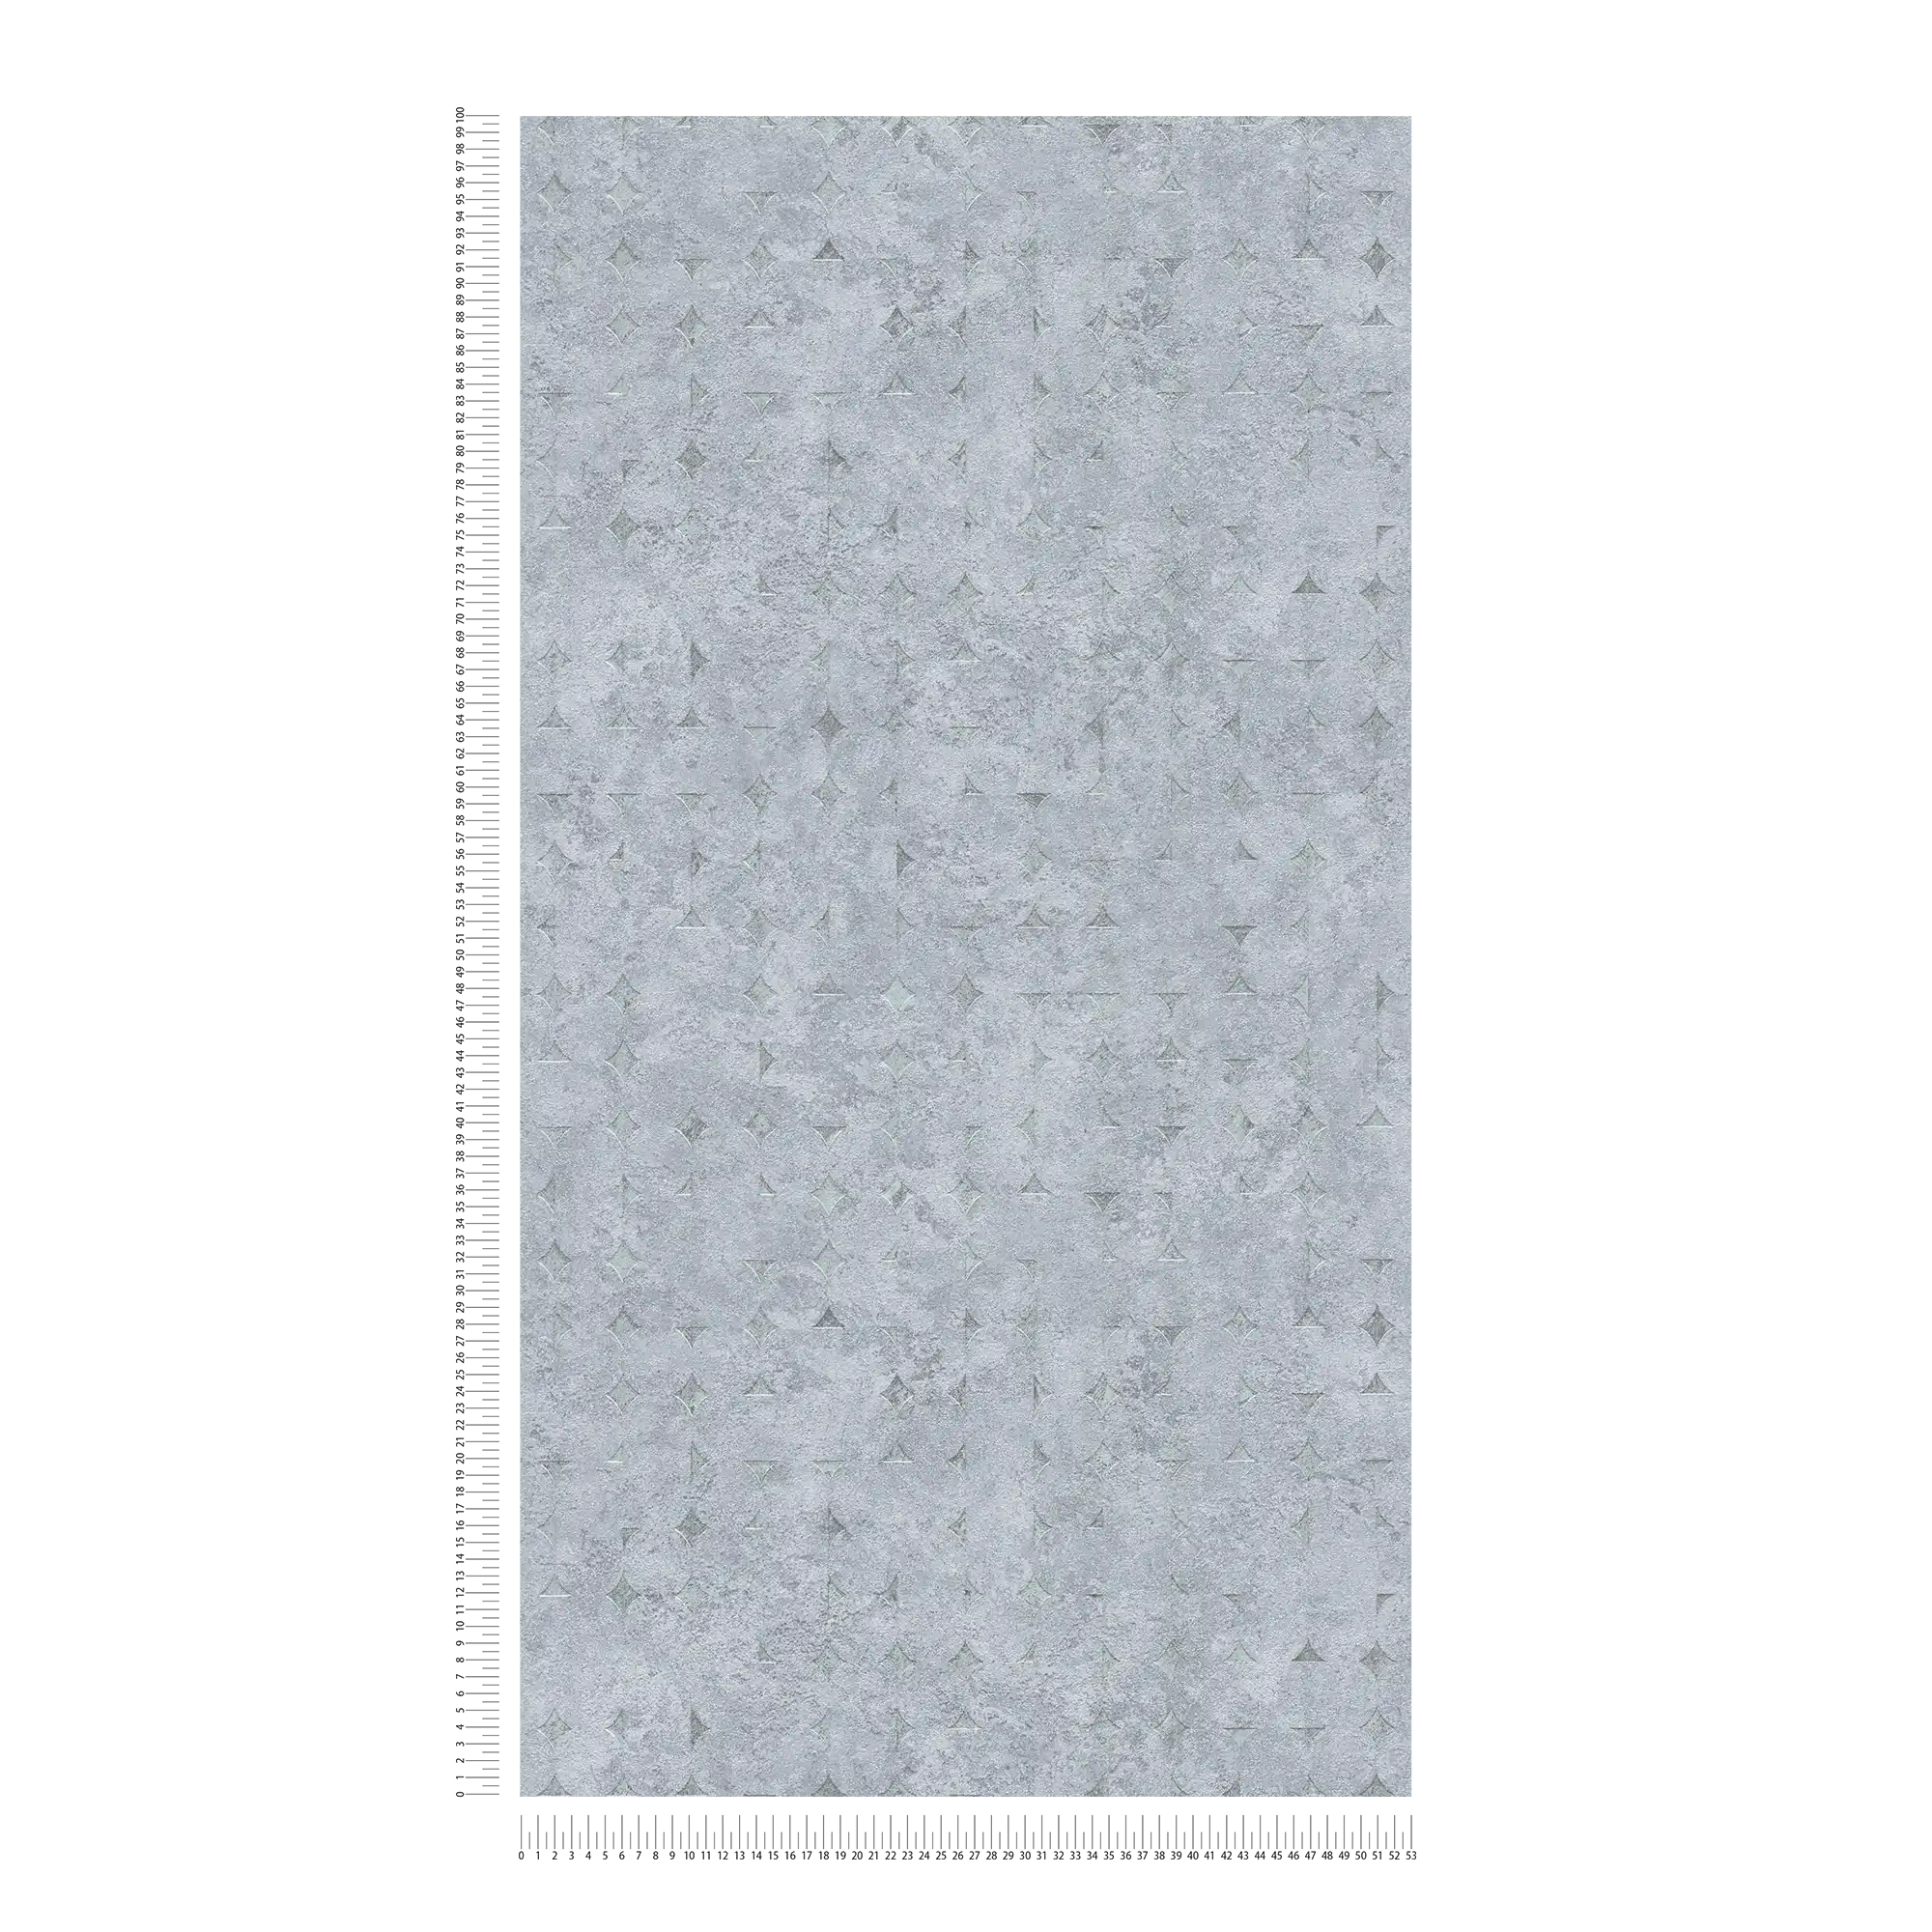             Carta da parati non tessuta in un unico colore con struttura e motivo ruvido - grigio, argento
        